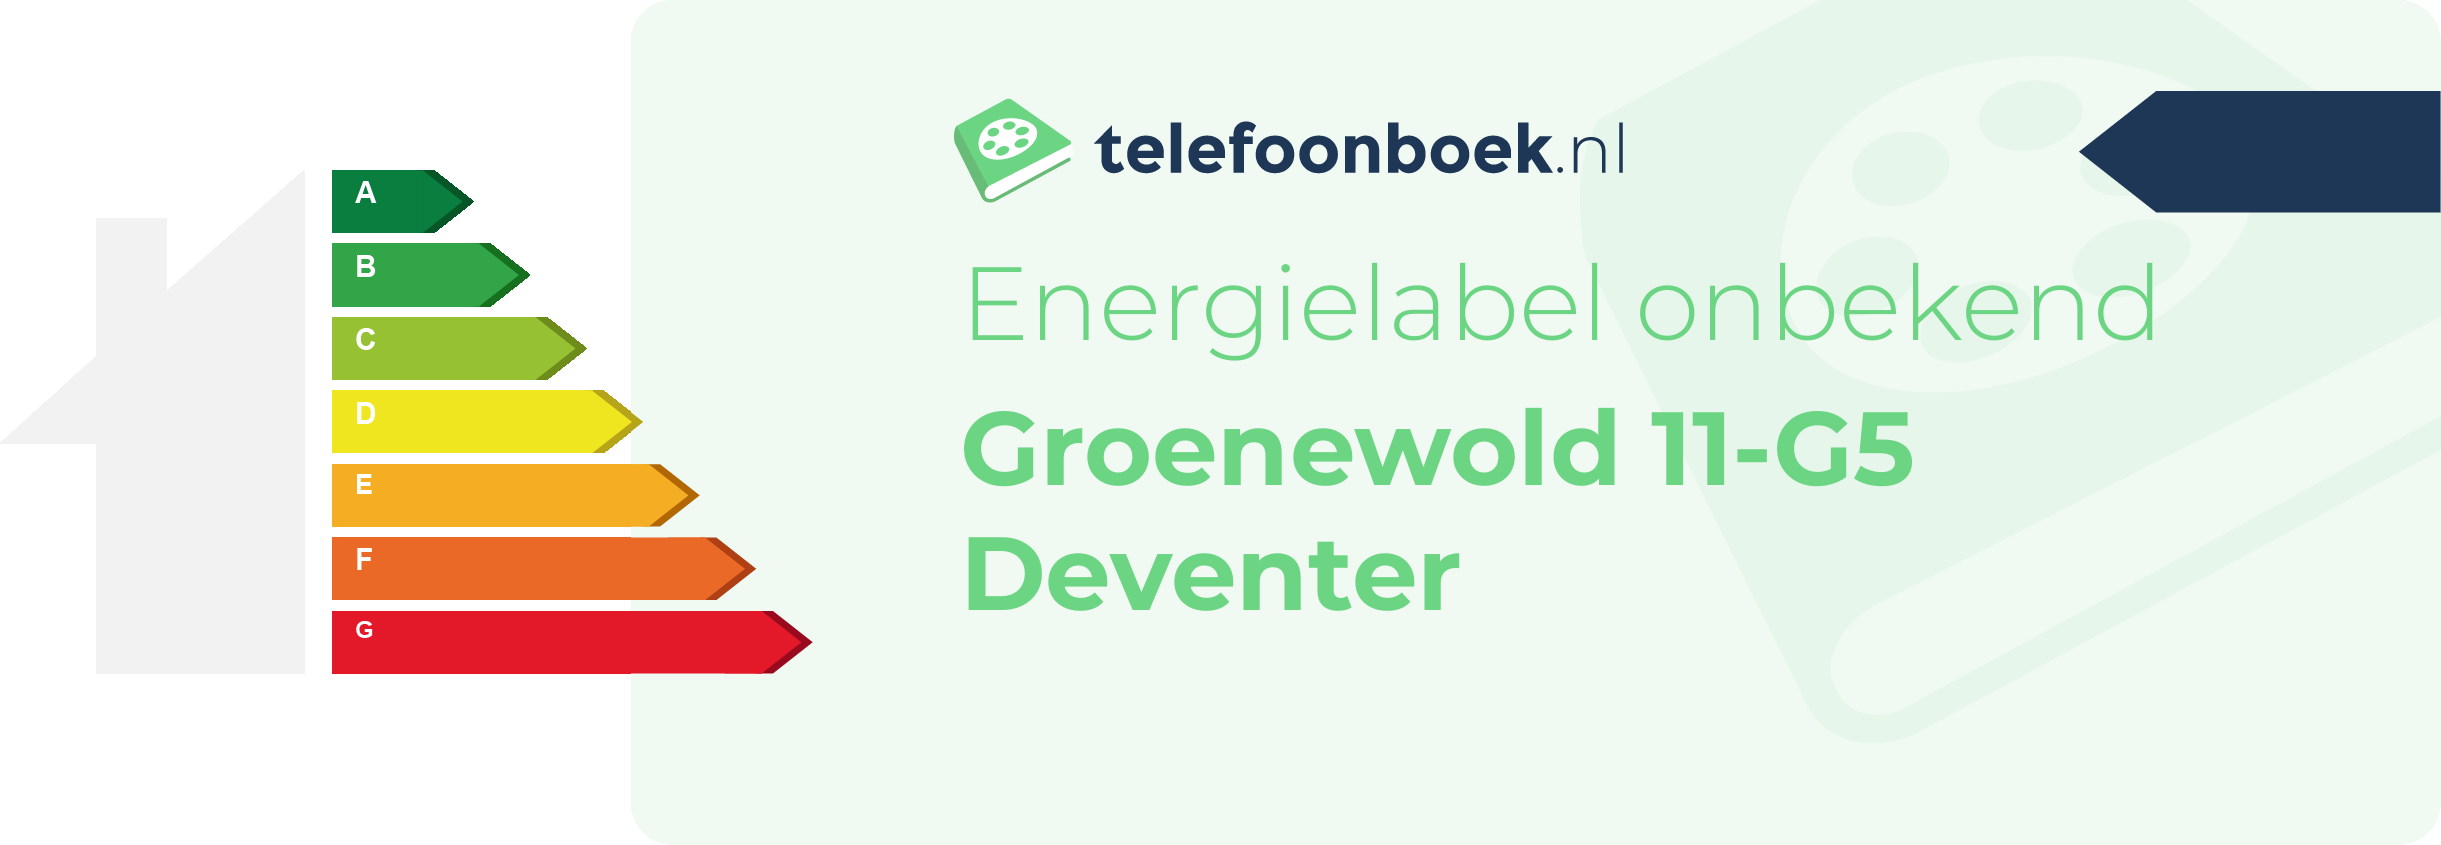 Energielabel Groenewold 11-G5 Deventer